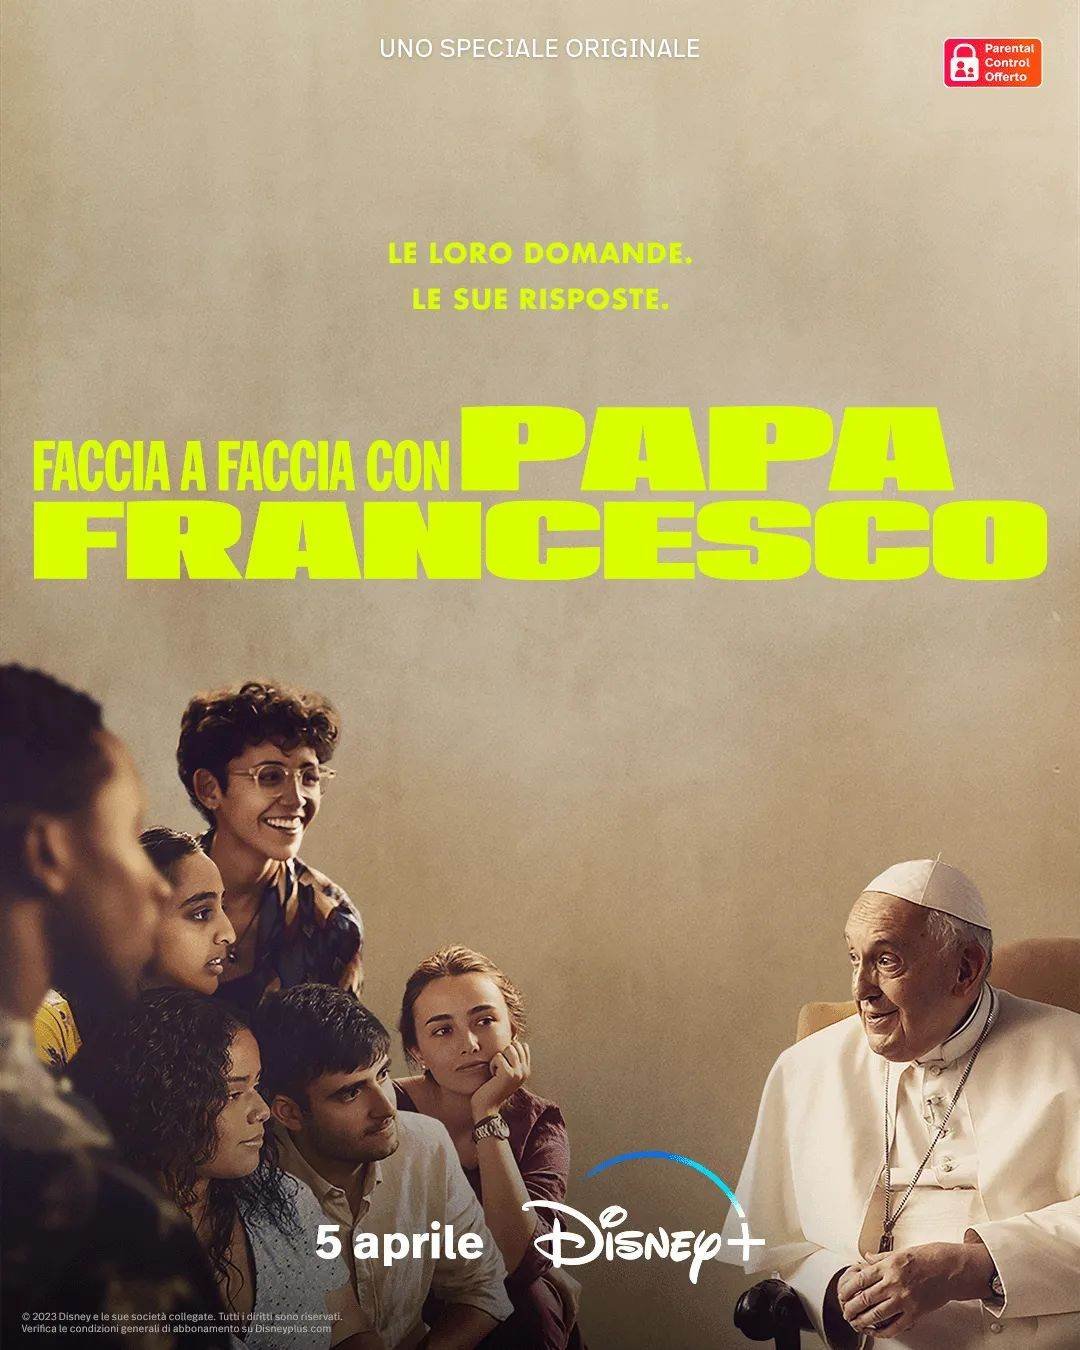 Faccia a faccia con Papa Francesco - Poster documentario con il papa e i giovani protagonisti